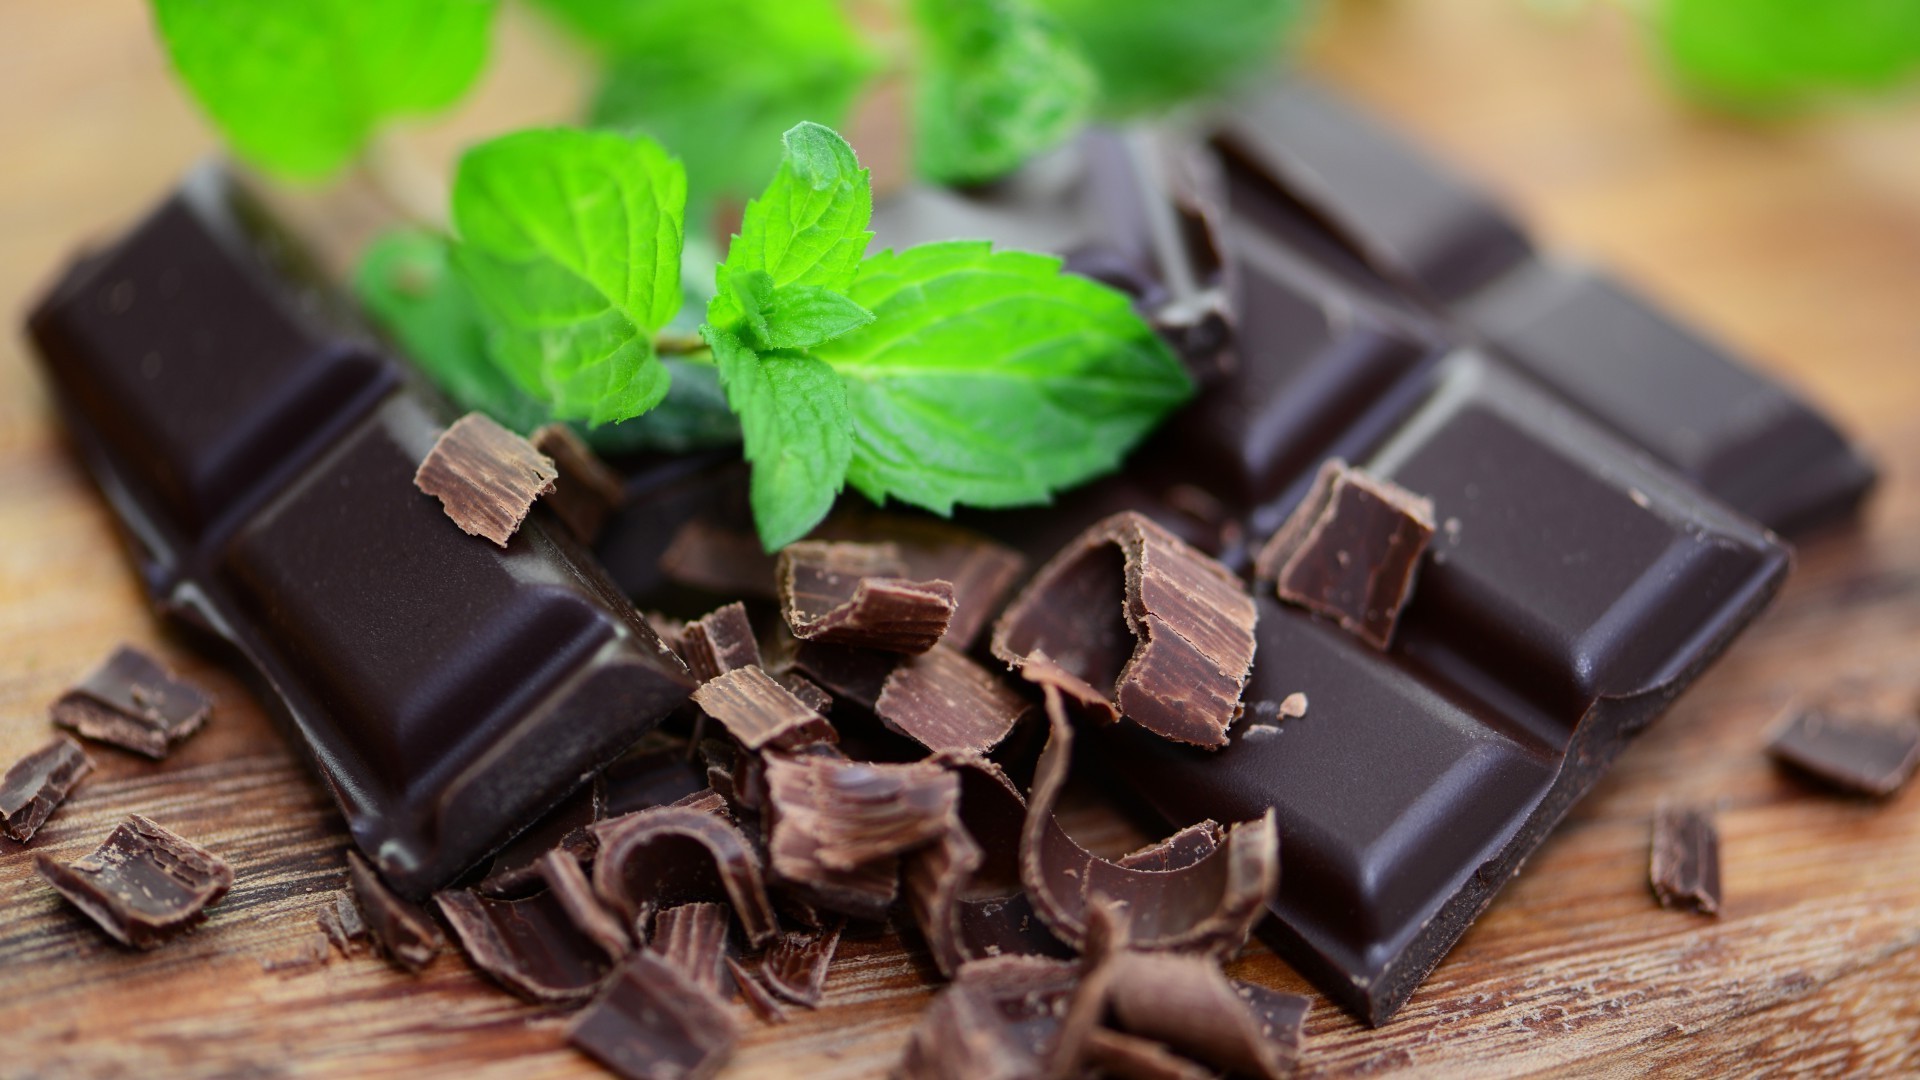 шоколад темный конфеты еда сахар молоко сломанный кондитерское изделие какао вкусные индульгенция горький молочный шоколад зависимость